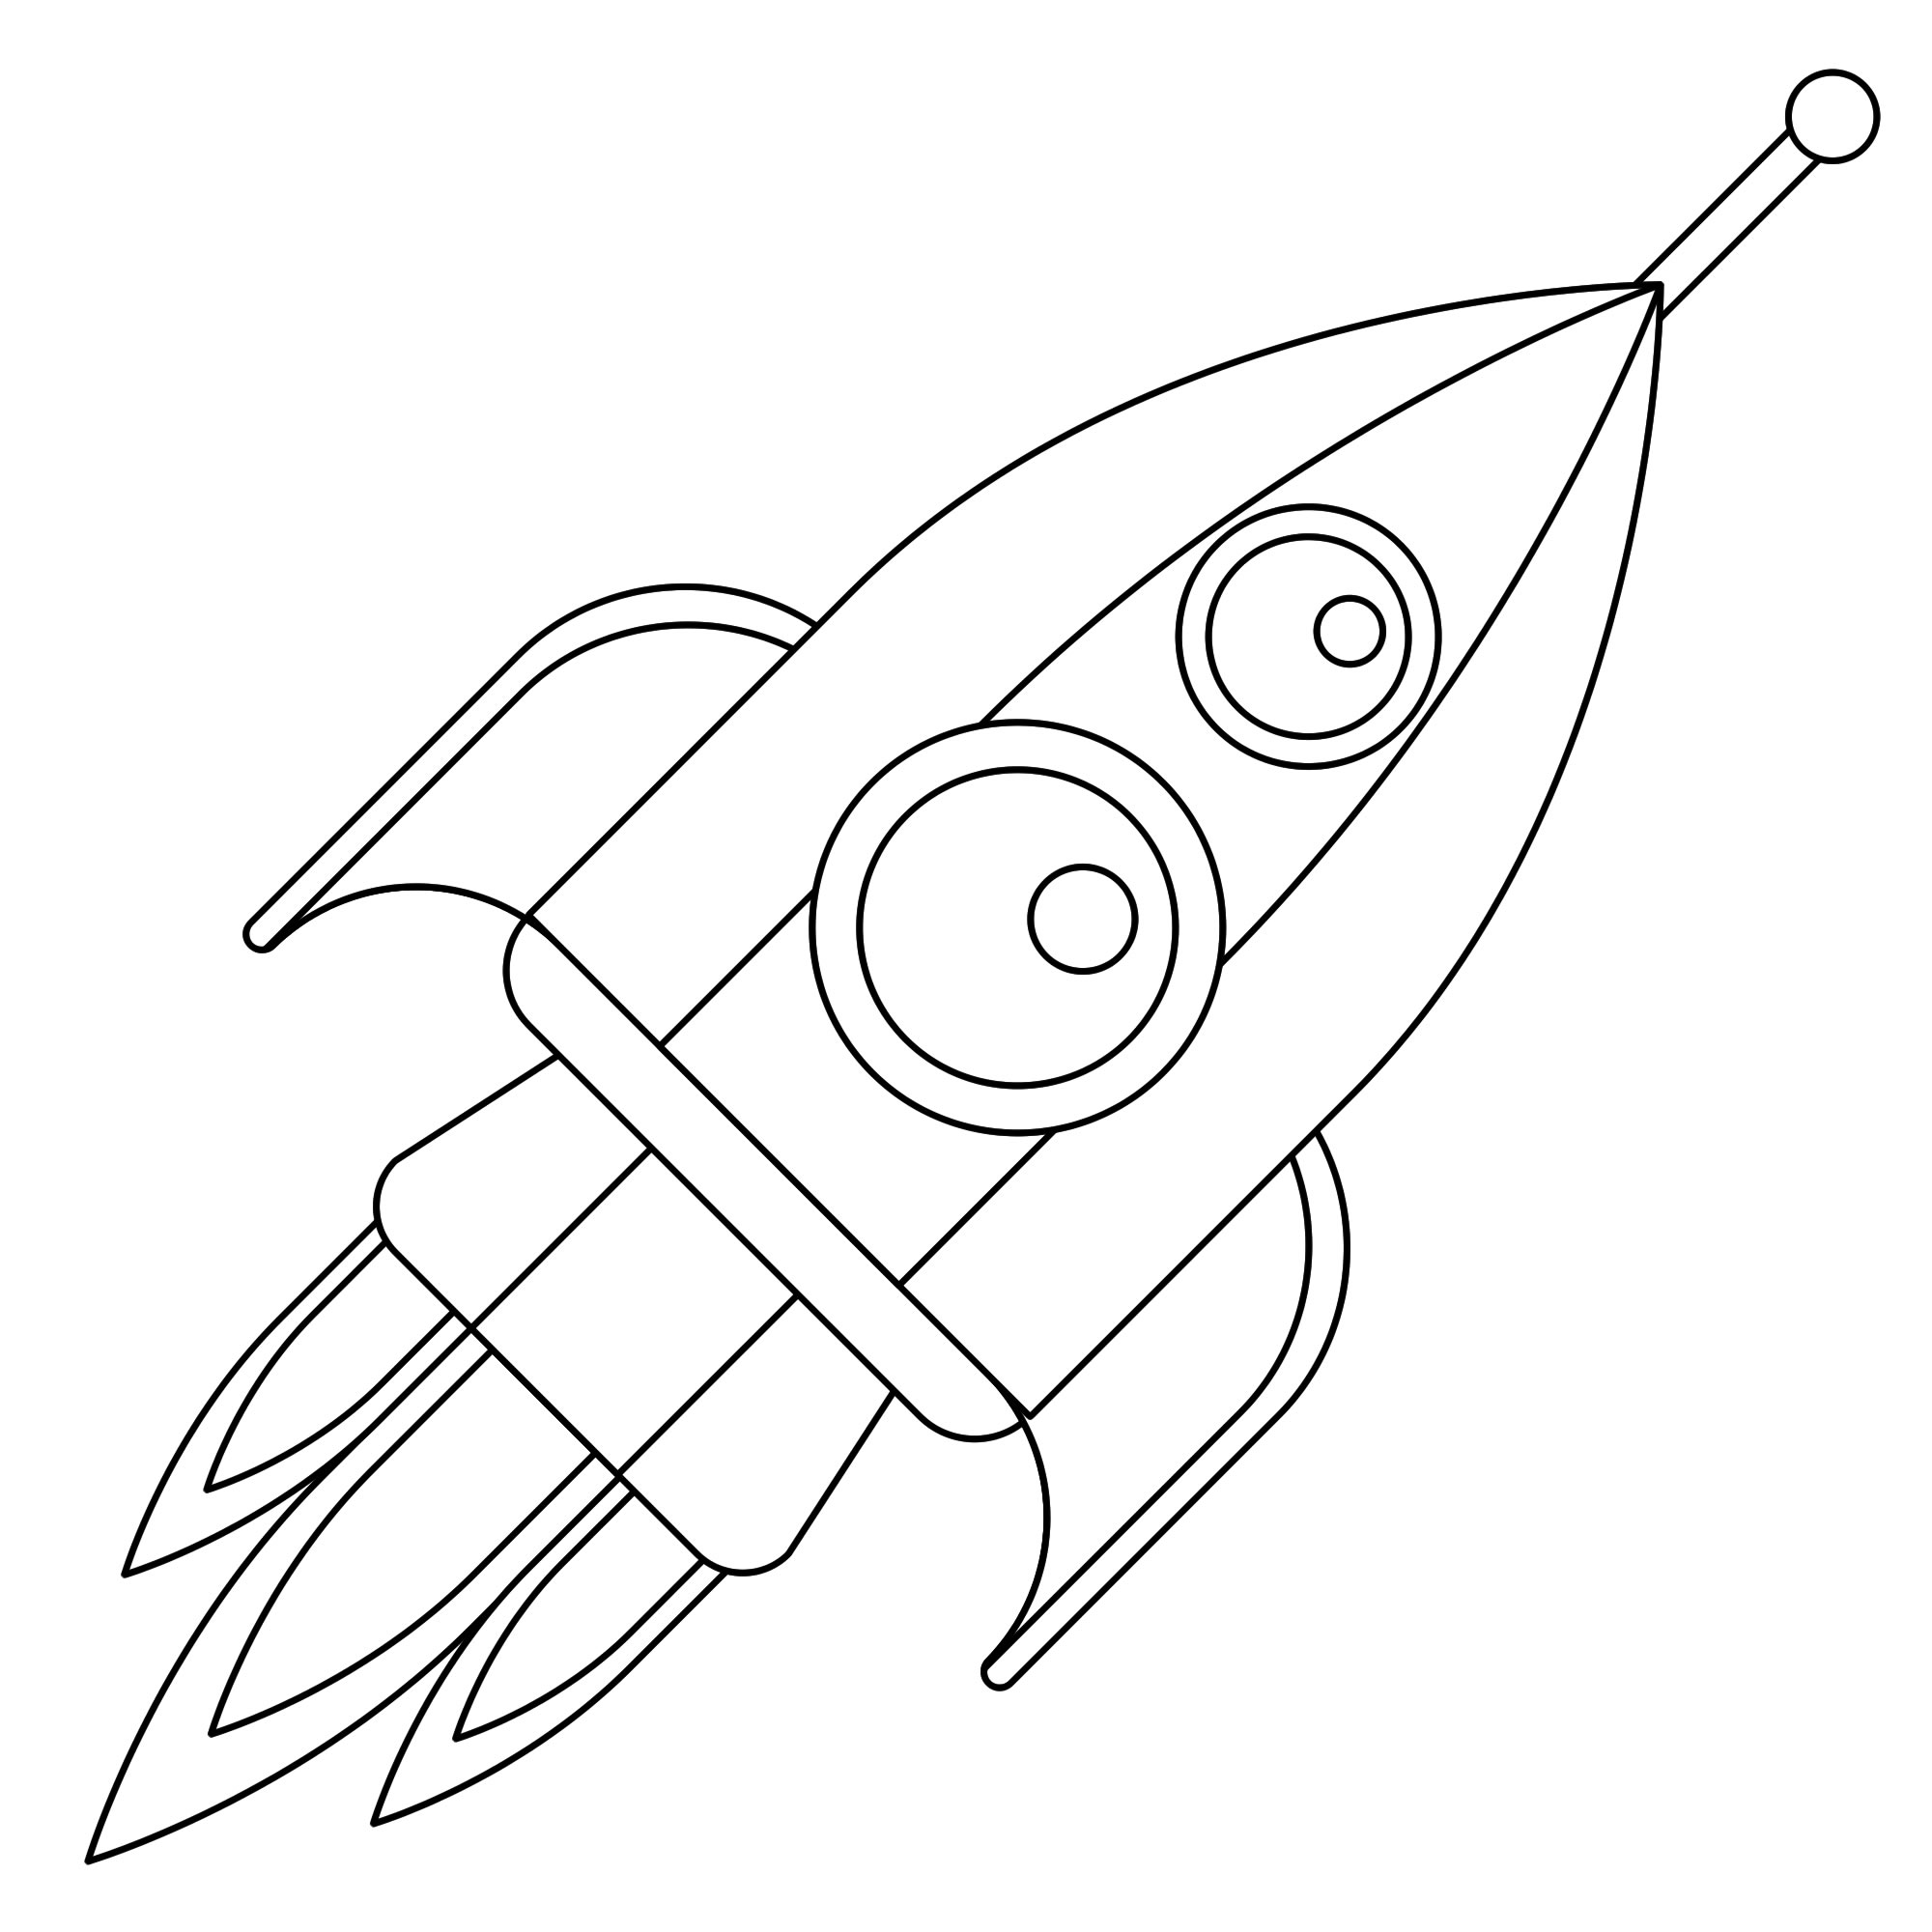 Раскраска Ракета - распечатать в формате А4 | Раскраски, Детские раскраски, Цифровая марка